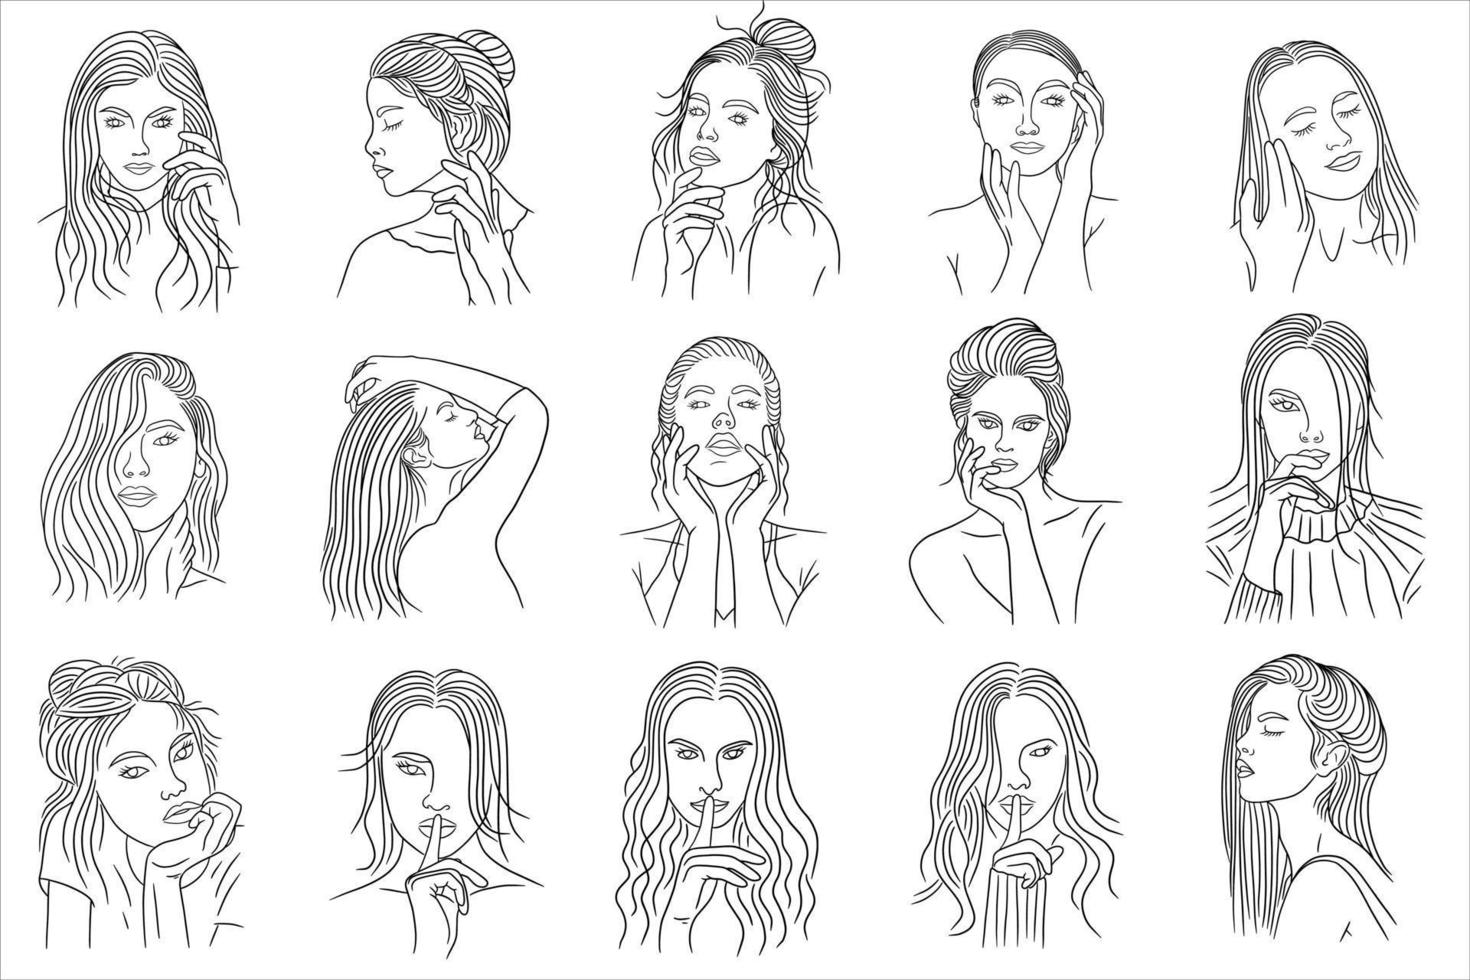 ensemble méga collection bundle de femmes fille gros plan visage pose modélisation dessin au trait illustration vecteur